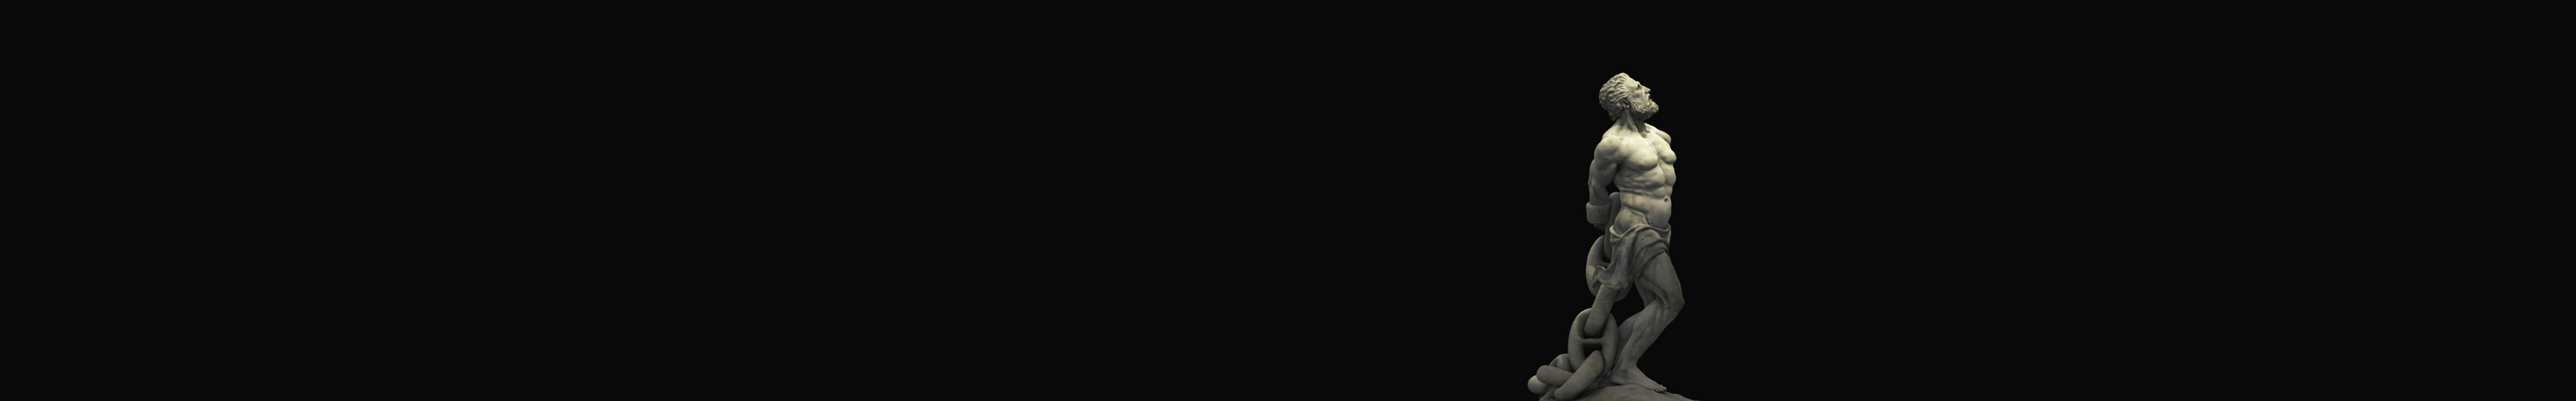 Furkan Yıldırım's profile banner